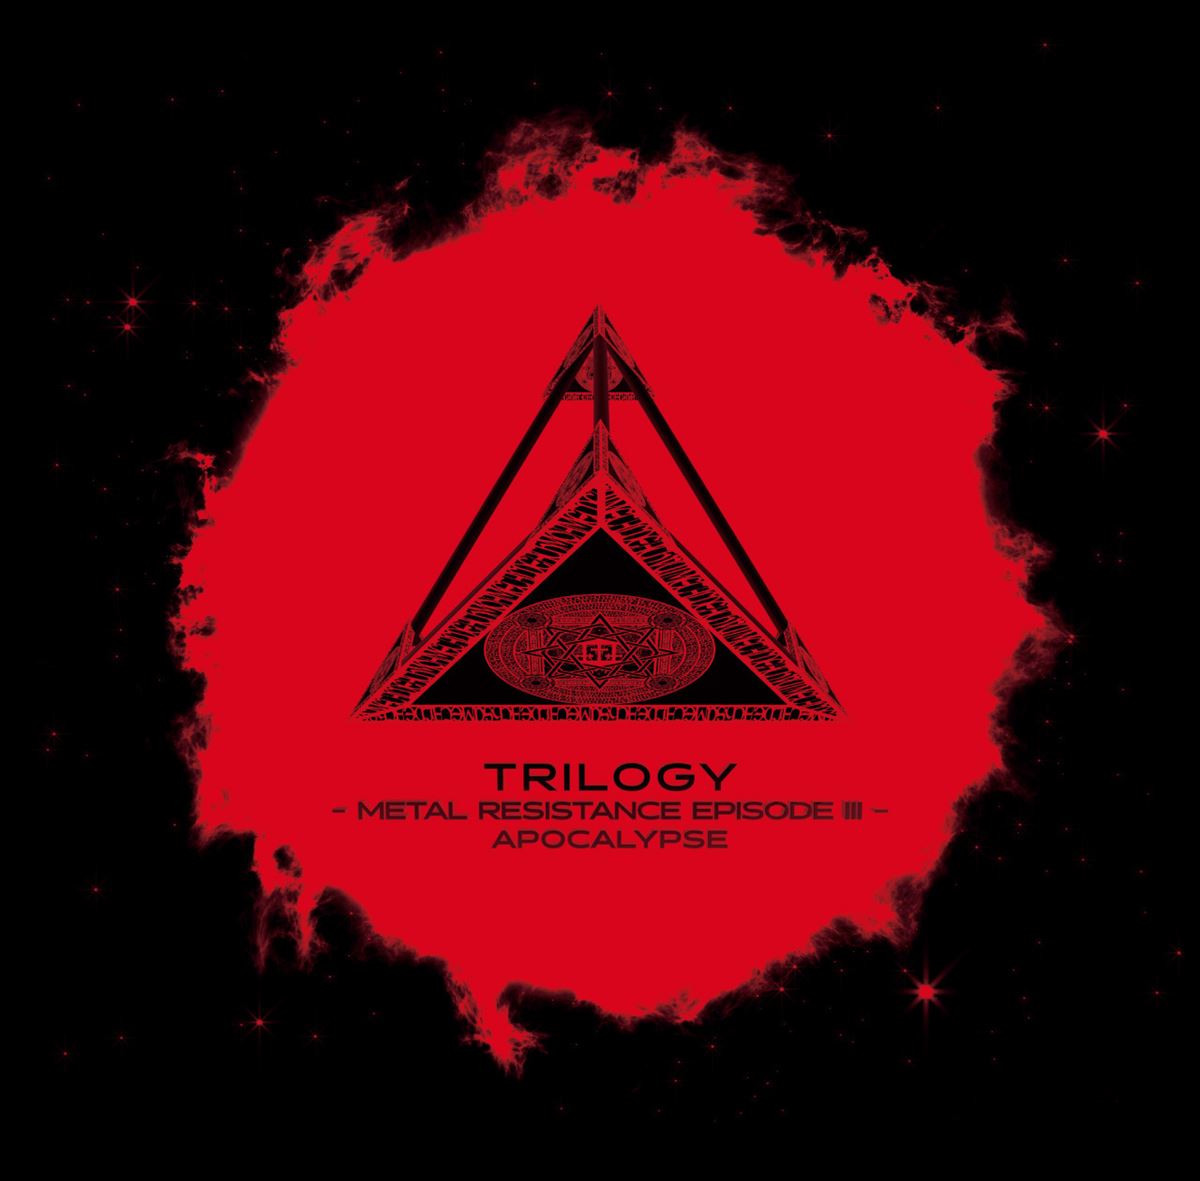 TRILOGY - METAL RESISTANCE EPISODE III - APOCALYPSE アナログ盤ジャケット